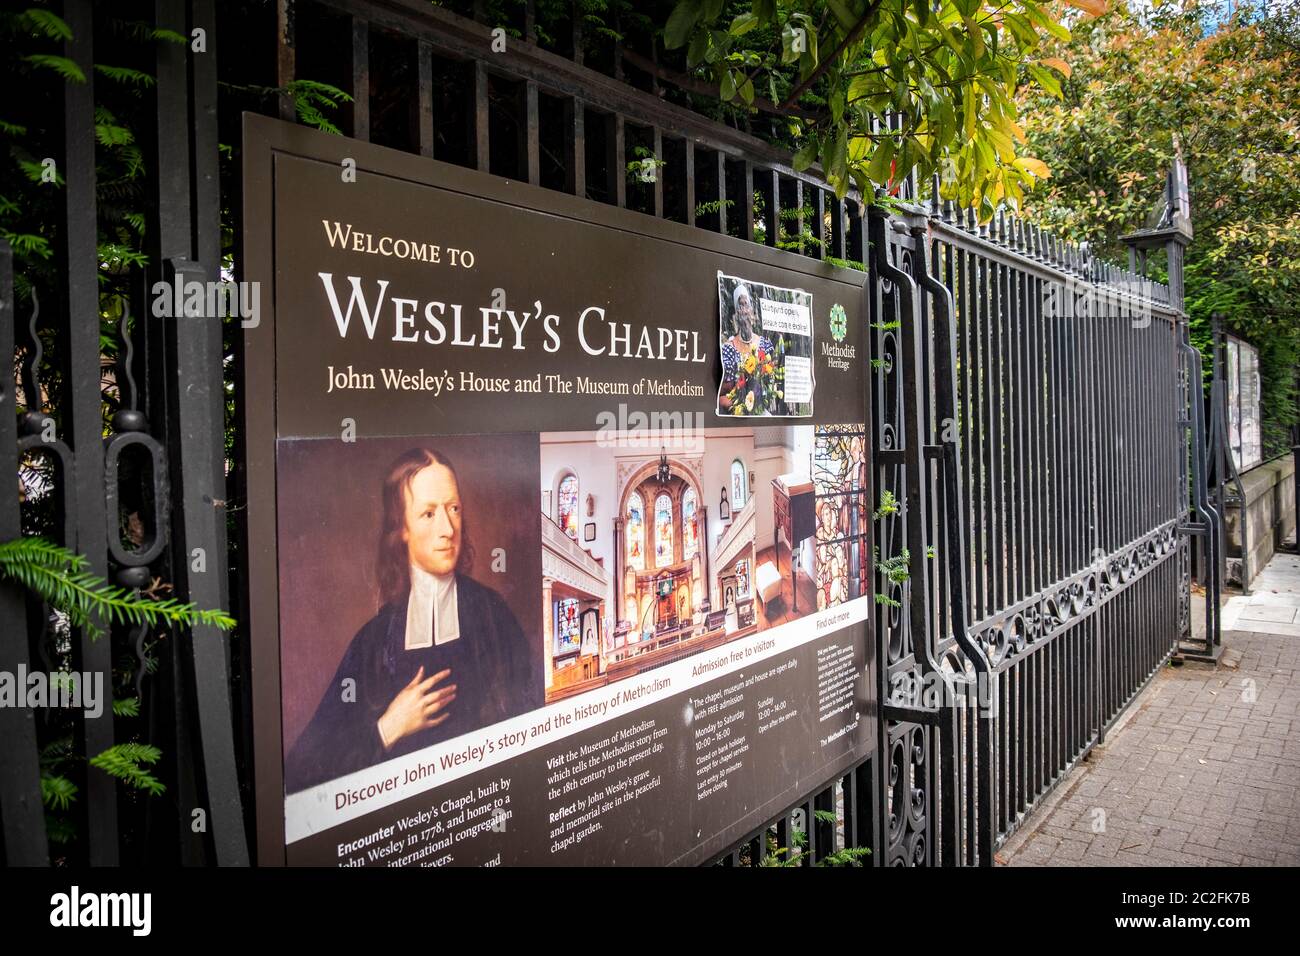 Wesley's Chapel - une église méthodiste dans la partie sud du quartier d'Islington de Londres Banque D'Images